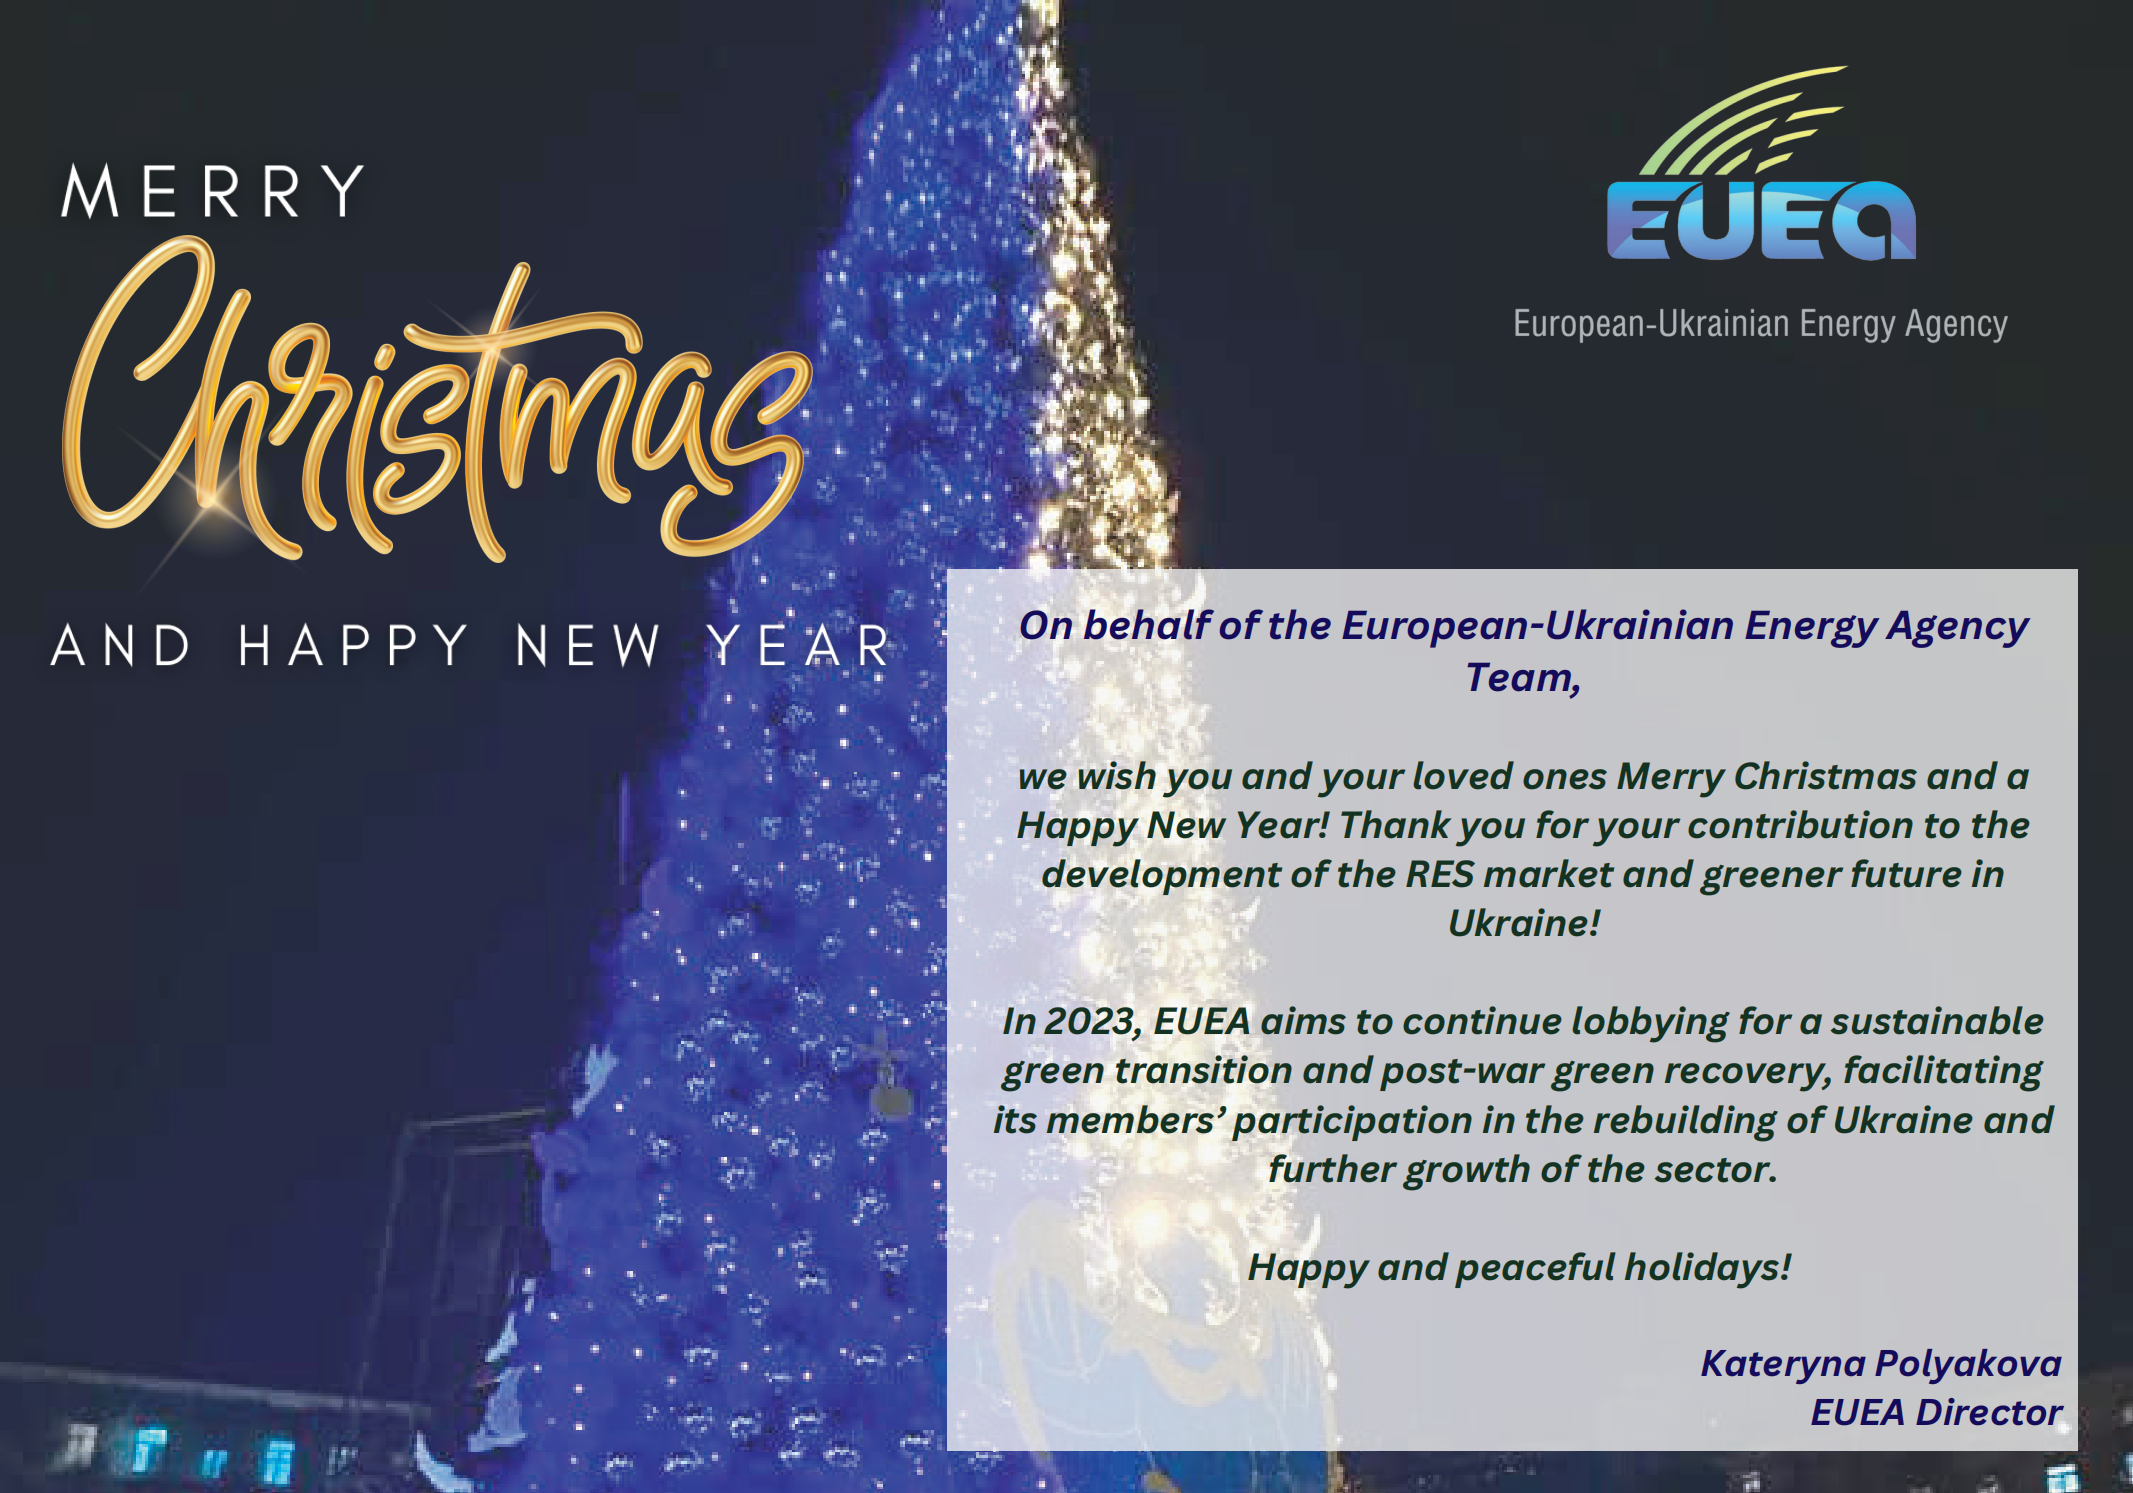 EUEA_New_Year_Card_2022_600_420_px_00_kopiya